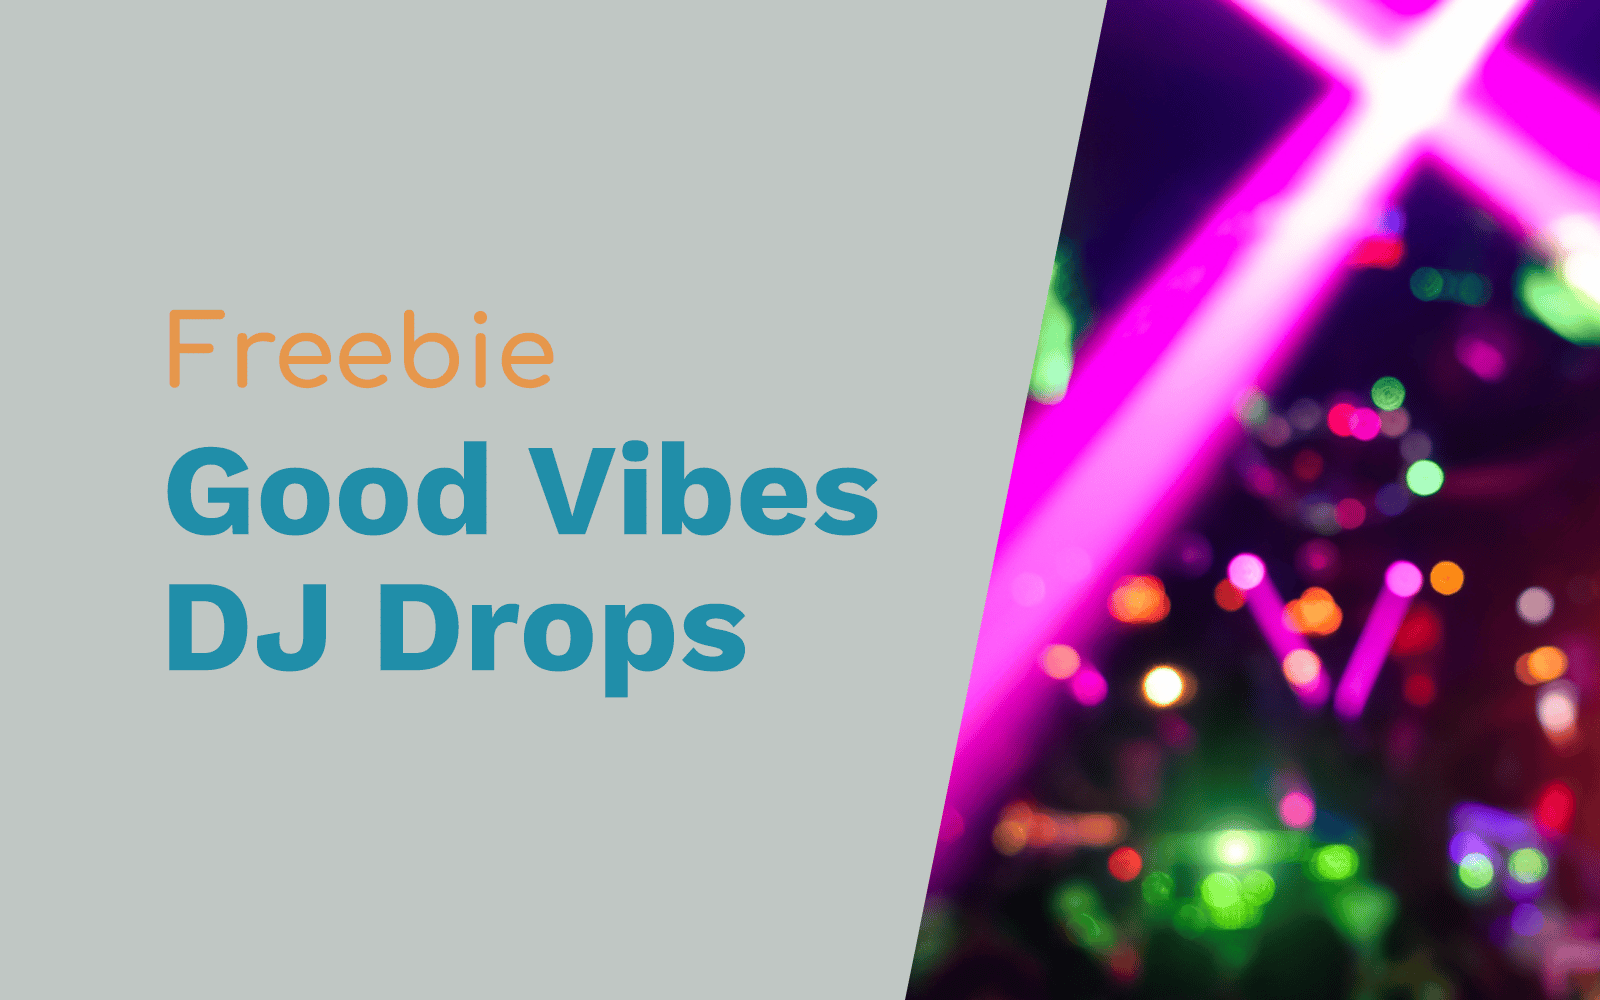 Good Vibes Free DJ Drops DJ Drops DJ drops Music Radio Creative